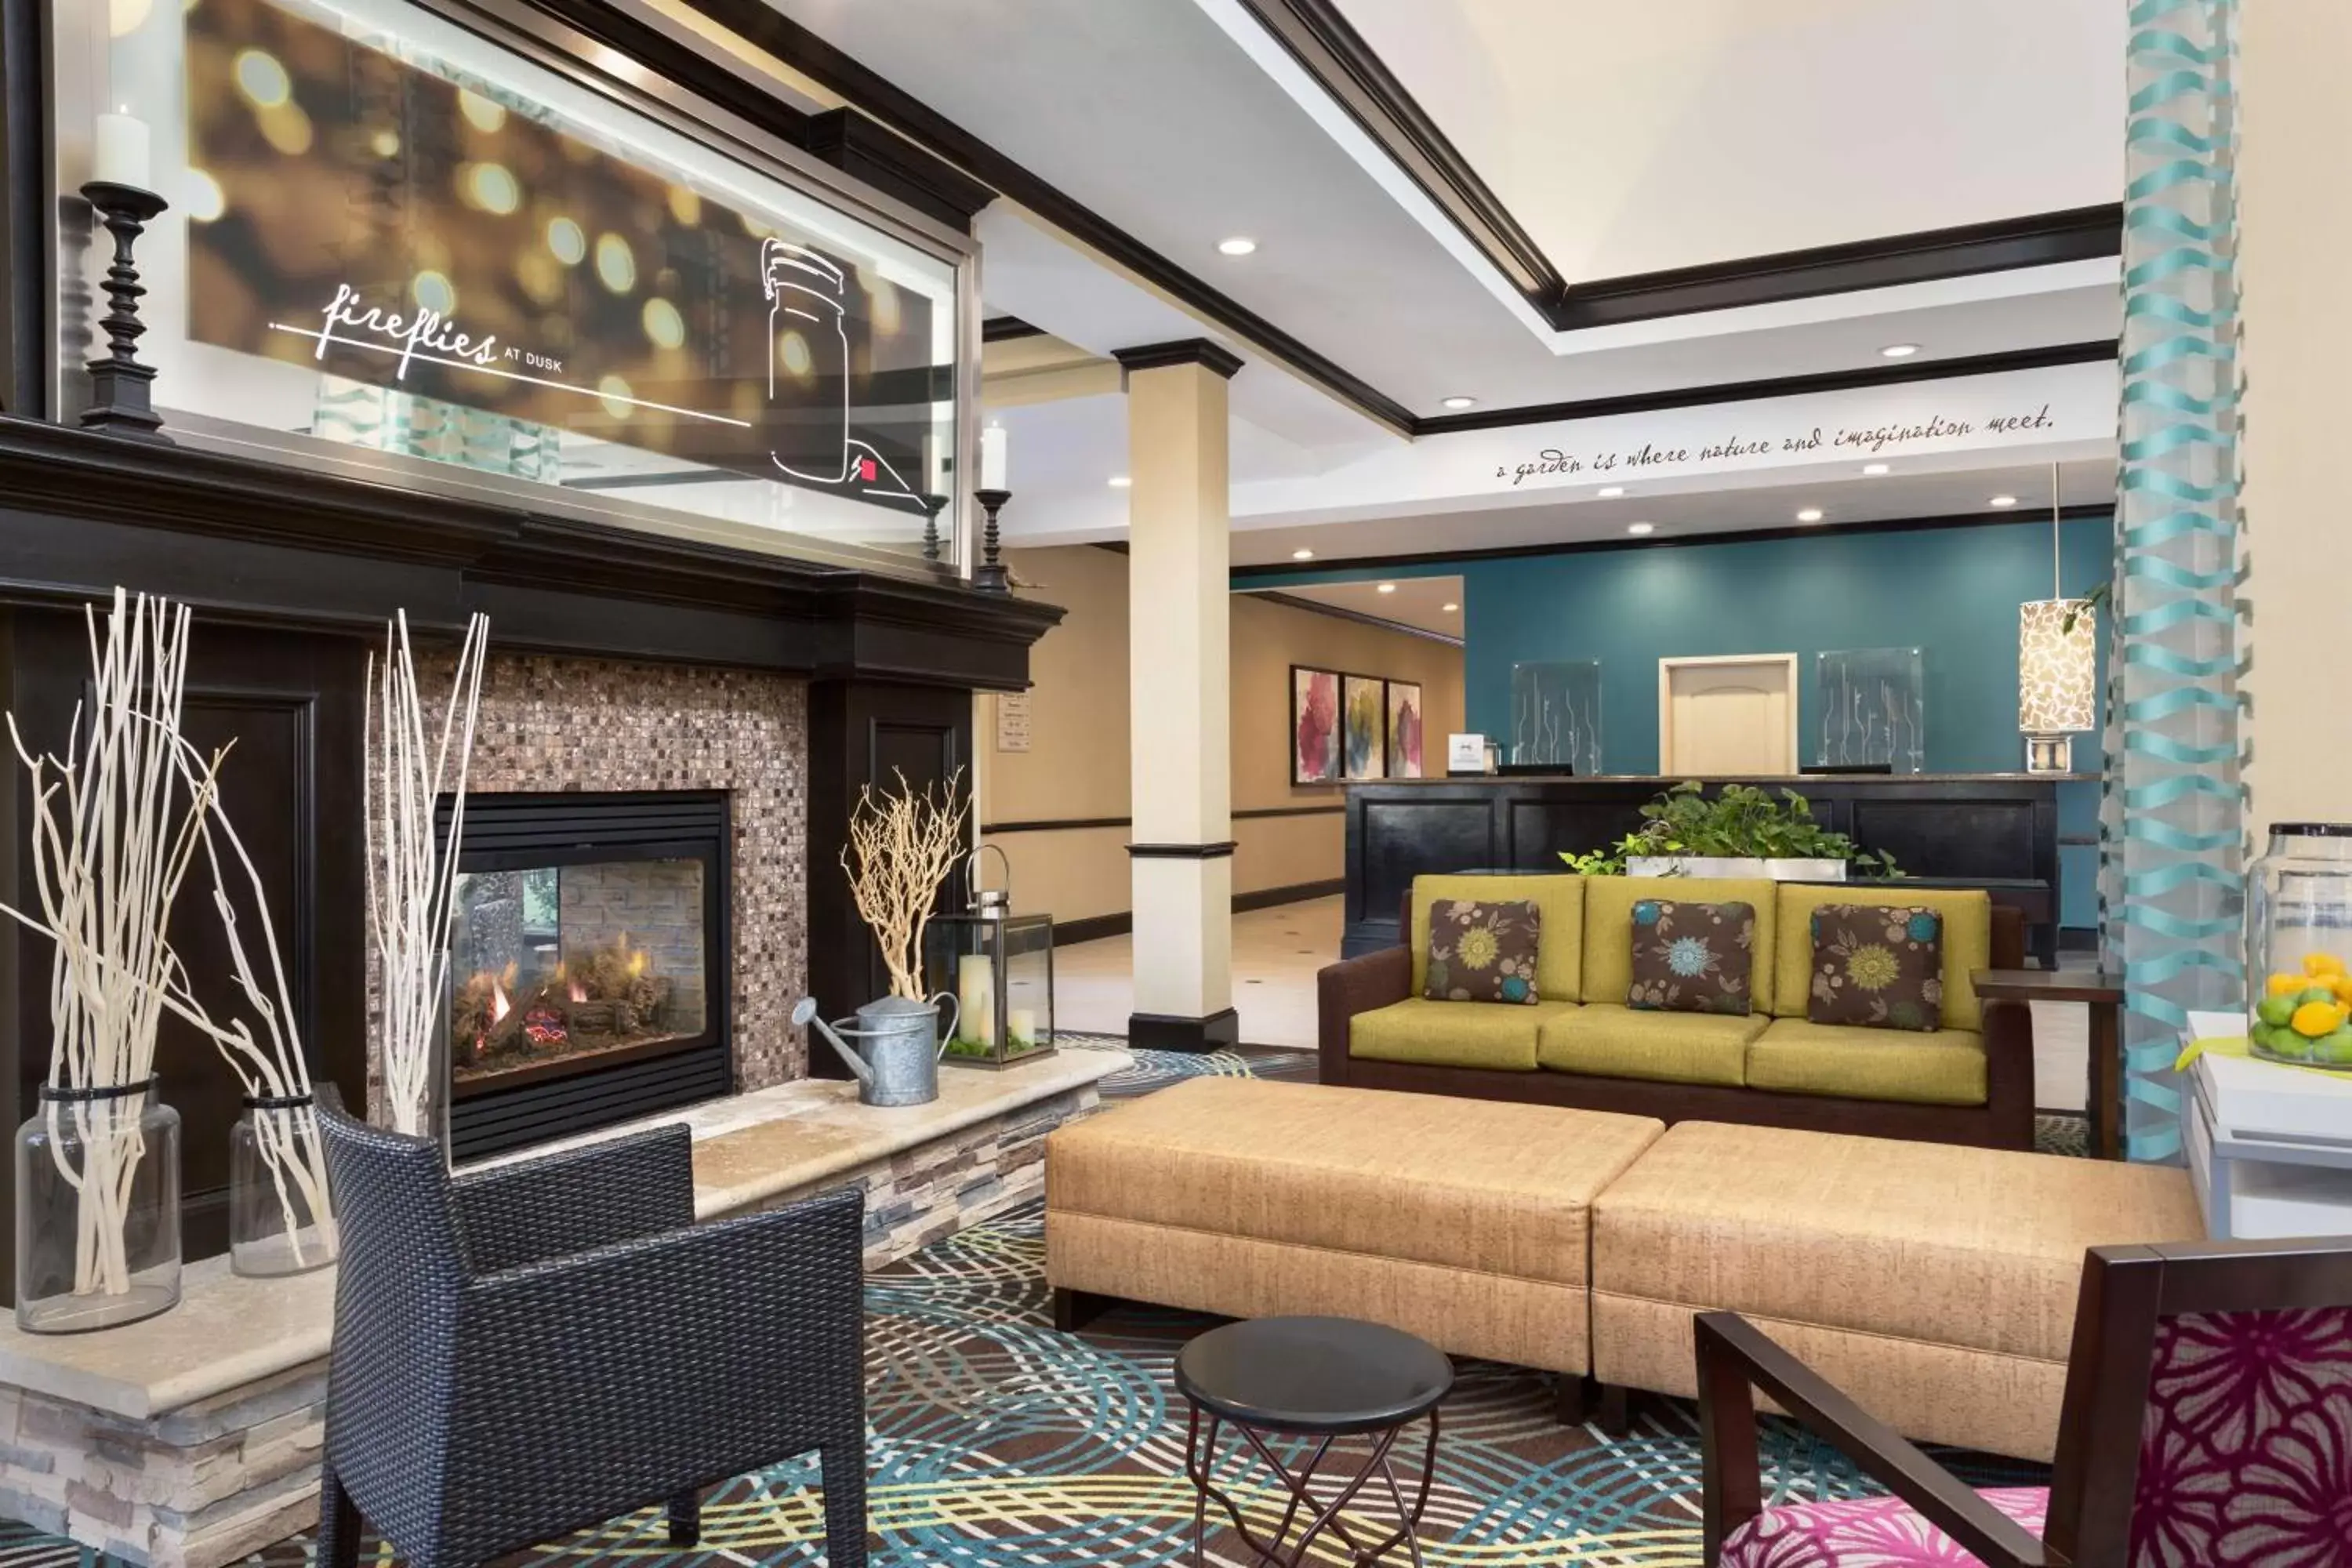 Lobby or reception, Lobby/Reception in Hilton Garden Inn Abilene